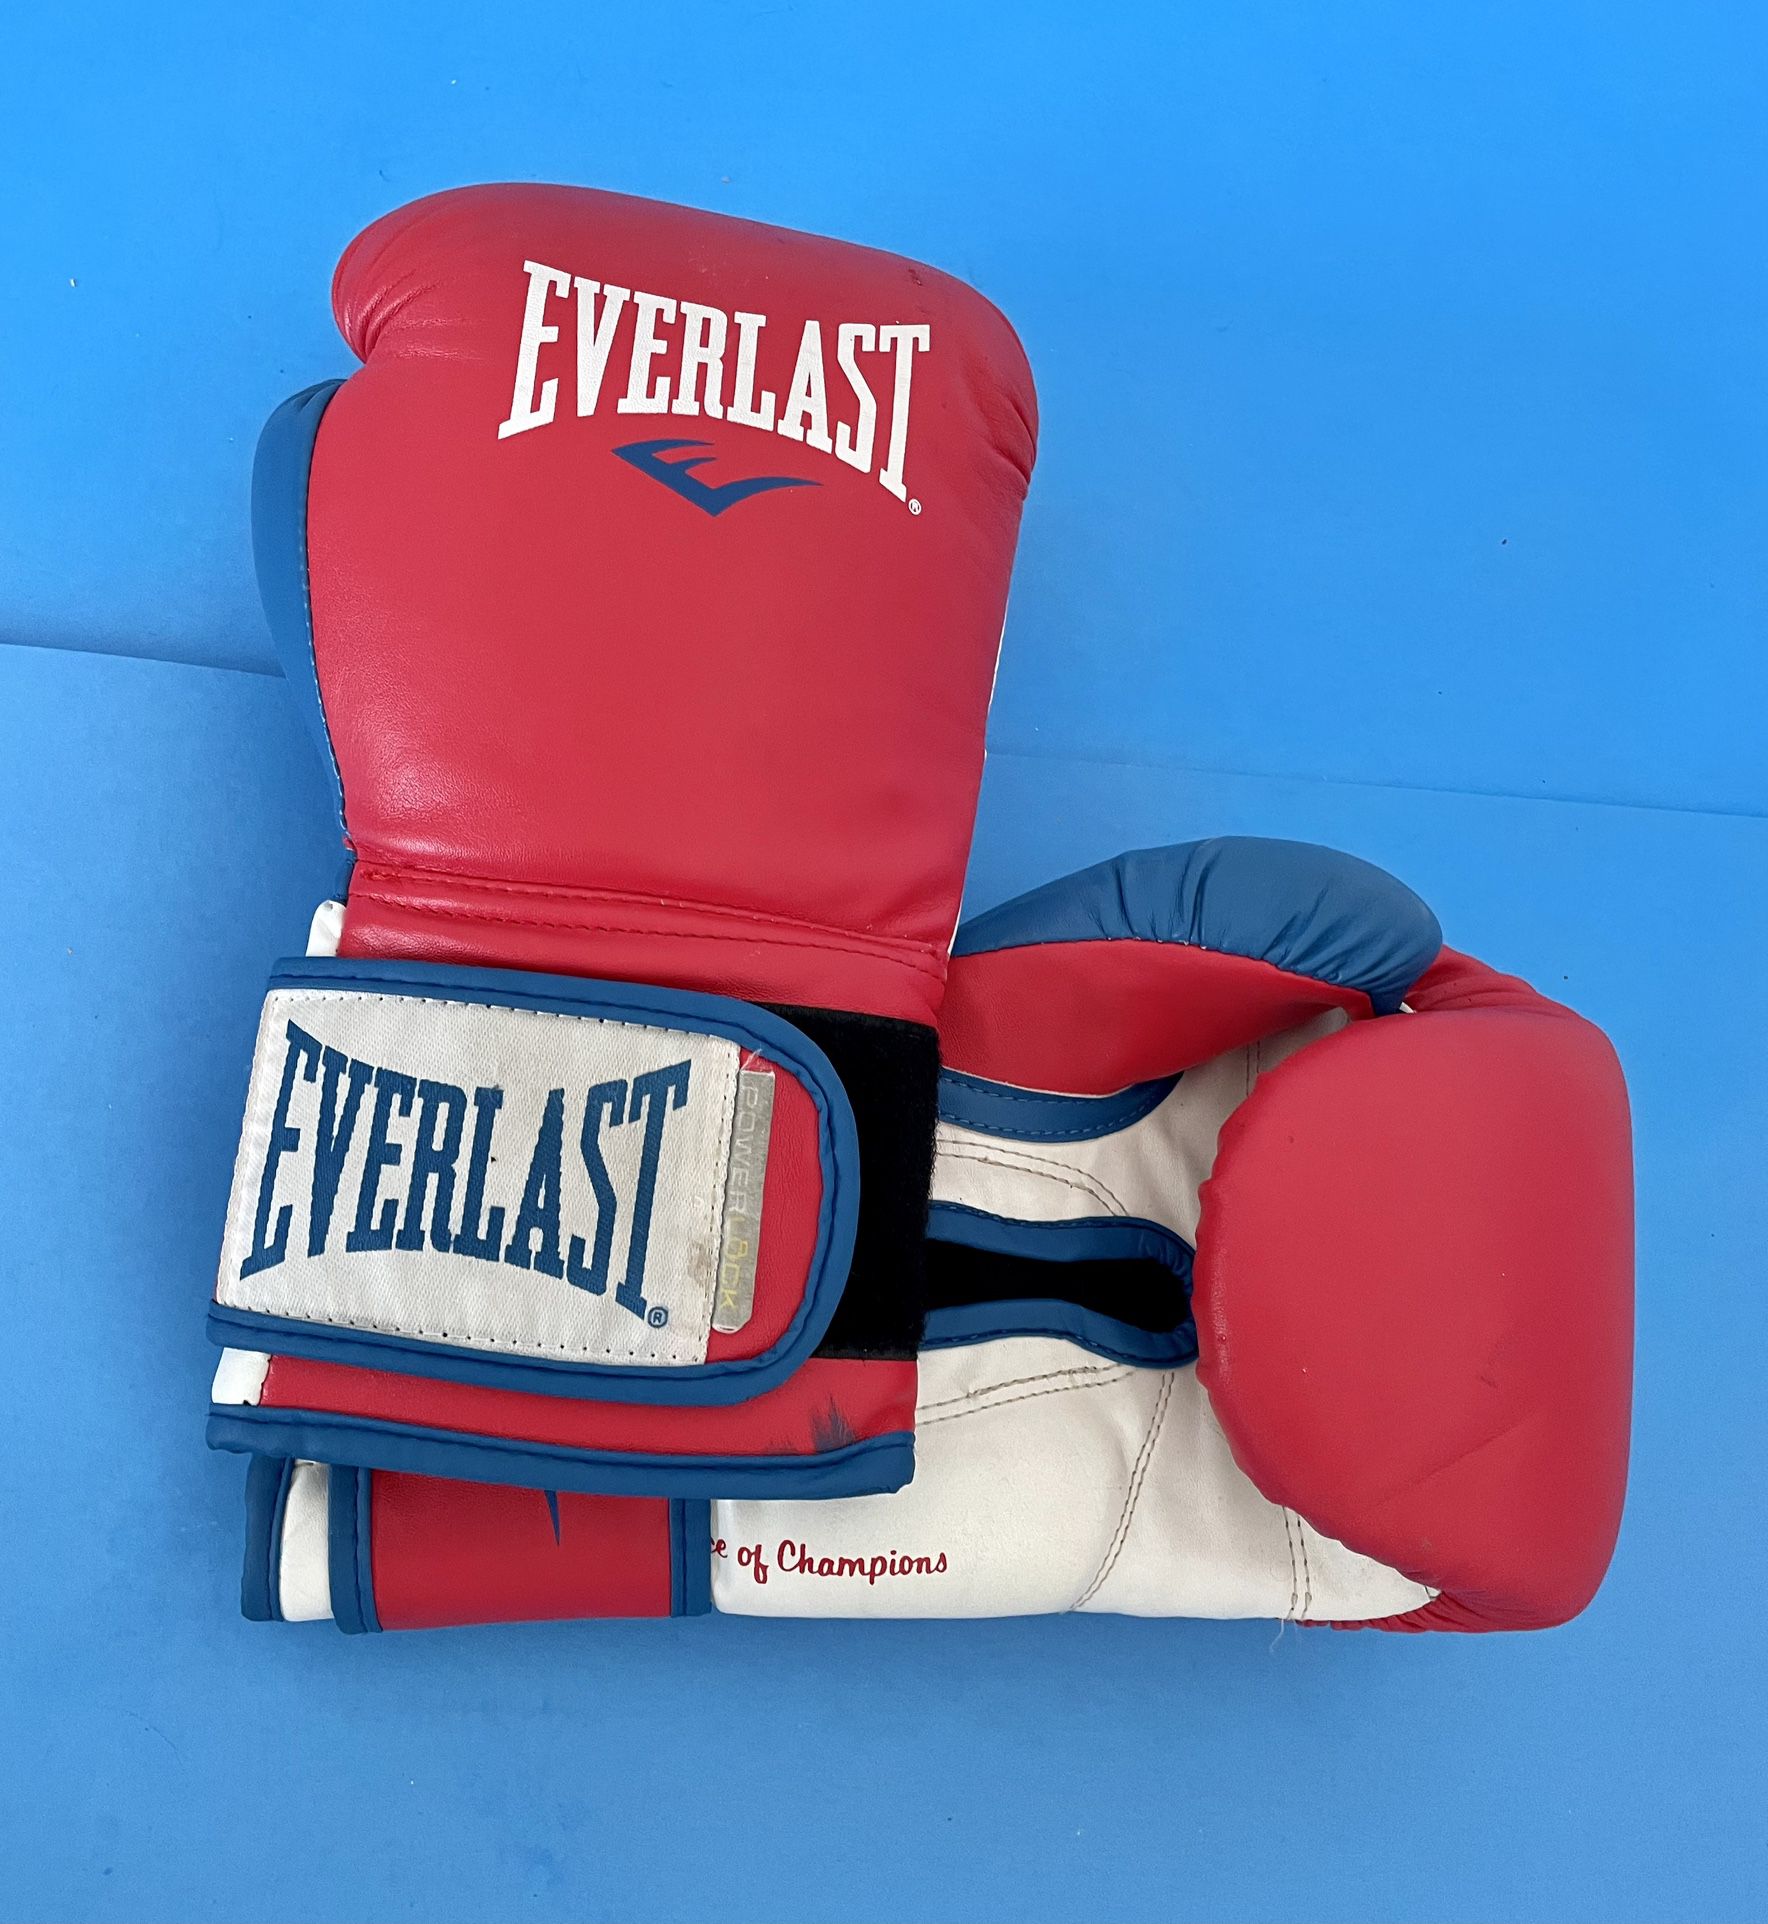 Tegenwerken Extractie Overstijgen 2 Pair Everlast Powerlock Boxing Gloves for Sale in Katy, TX - OfferUp